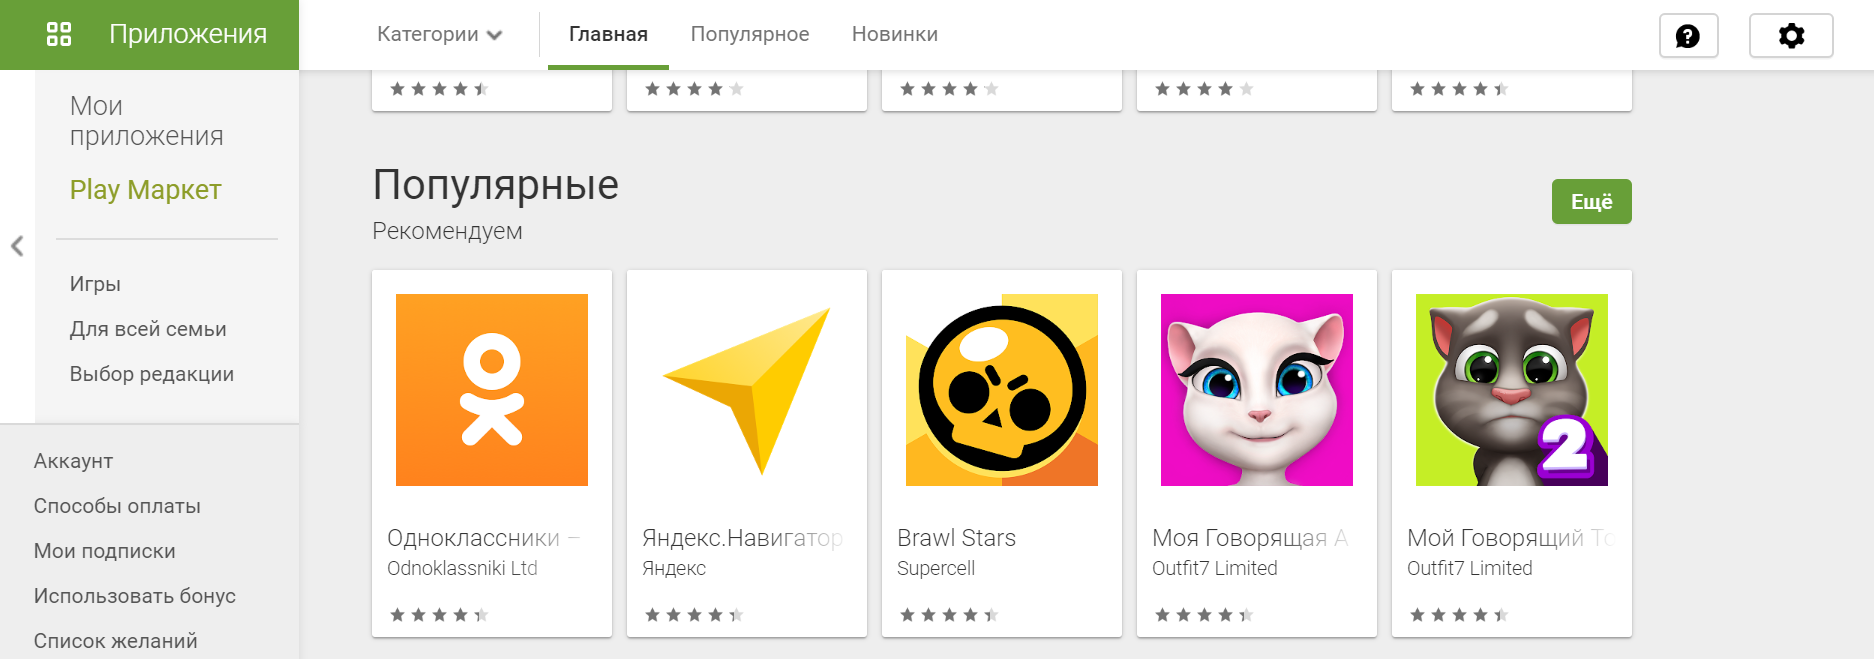 Популярные приложения в Google Play